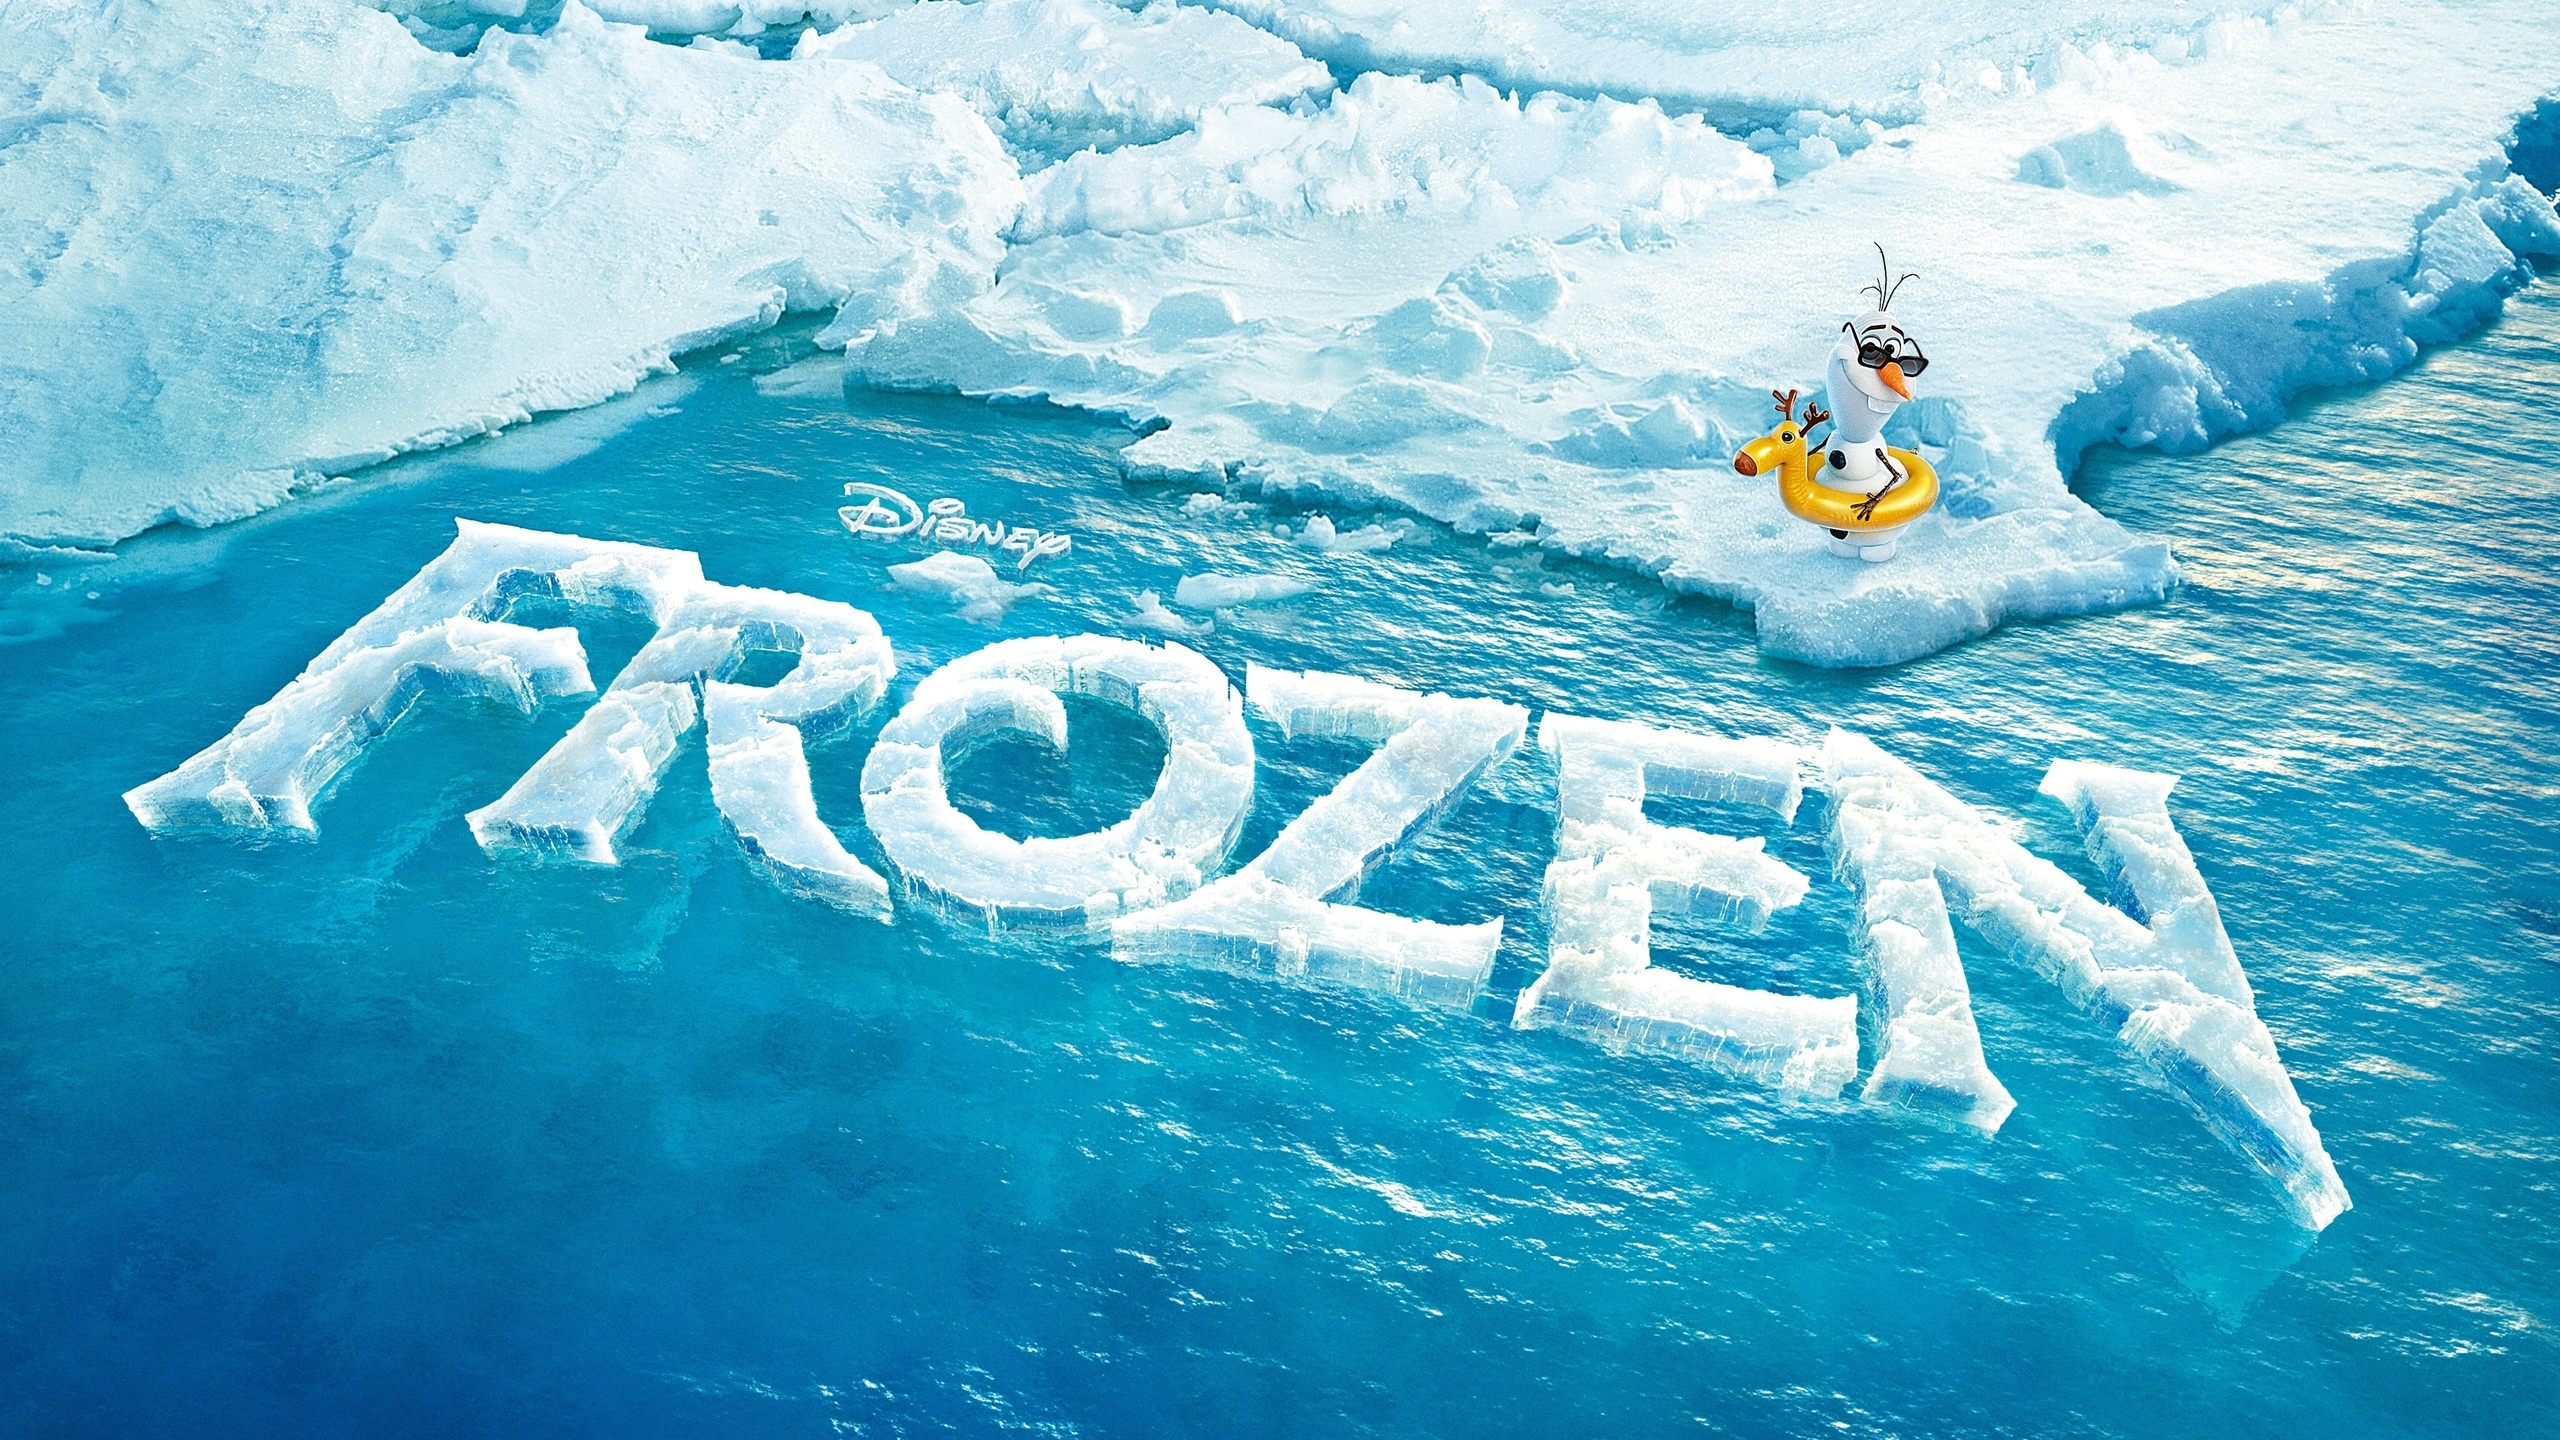 Frozen Movie for 2560x1440 HDTV resolution